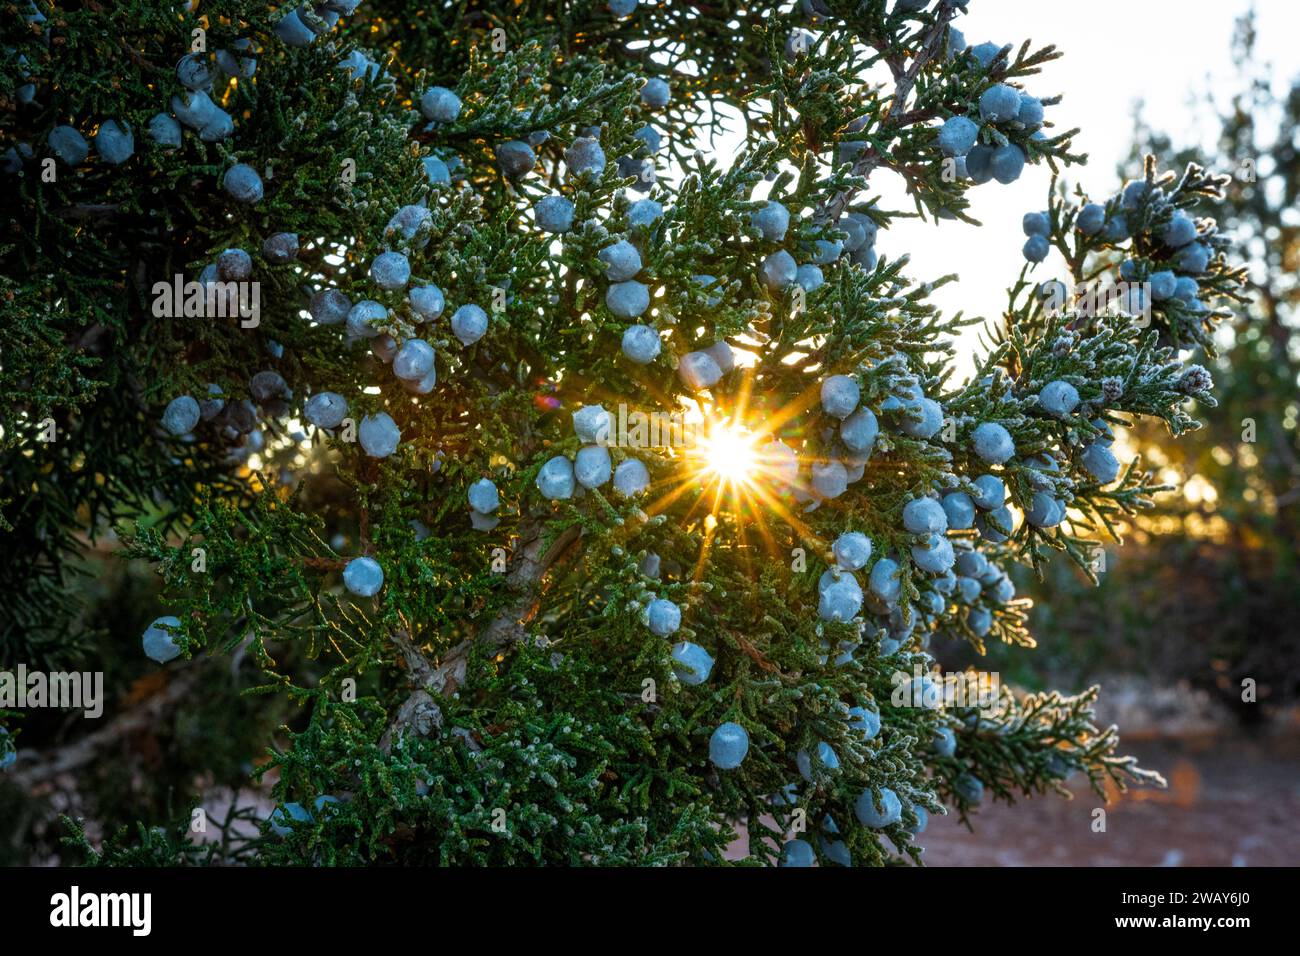 Una splendida immagine di mirtilli su un ramo durante un bellissimo tramonto Foto Stock